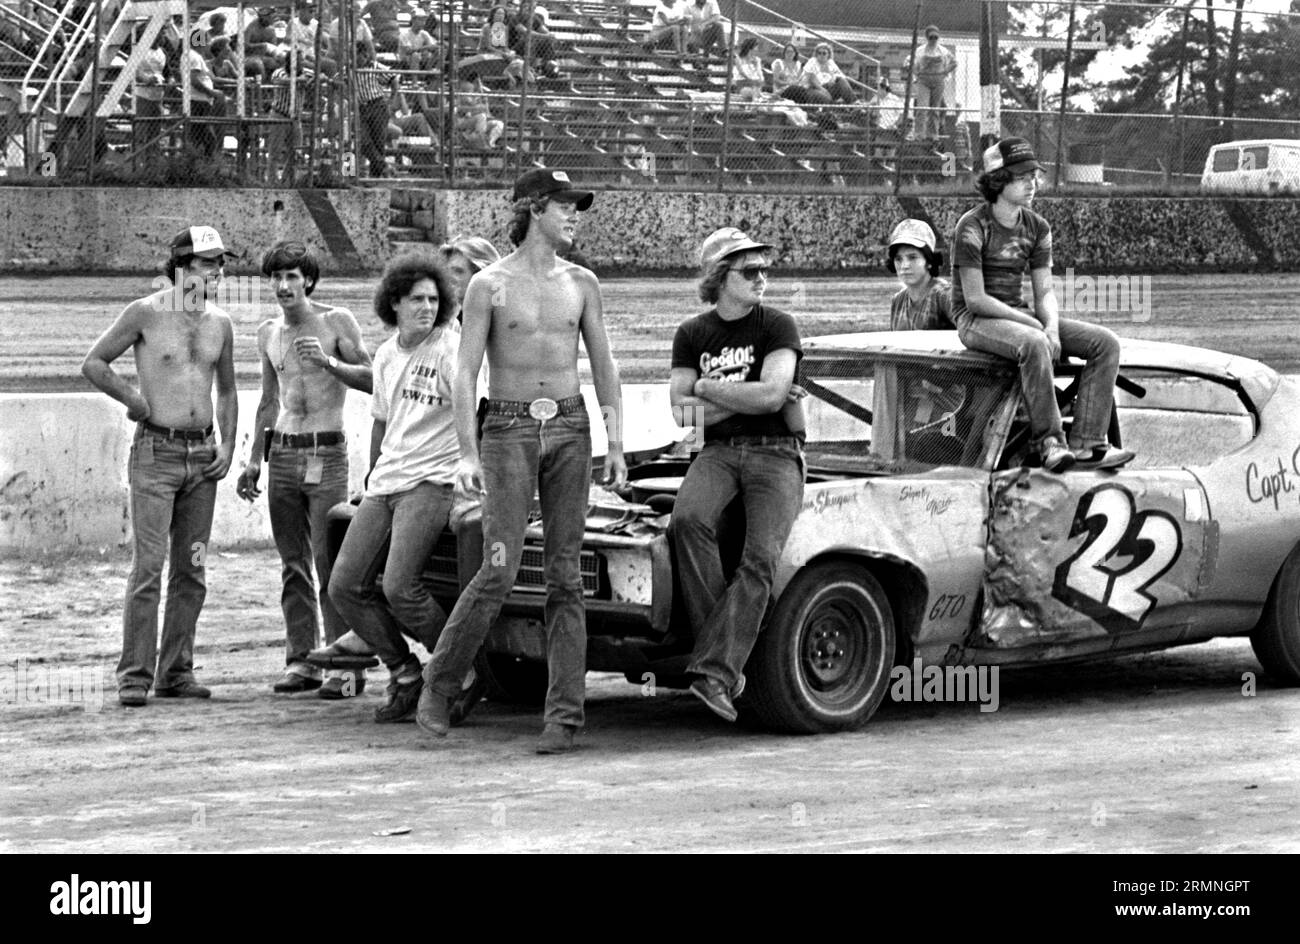 Am Wochenende sehen sich die Mitglieder des Stock Car Races ein Rennen 1984 auf dem Volusia Speedway in Barberville, Florida, an. Stockfoto